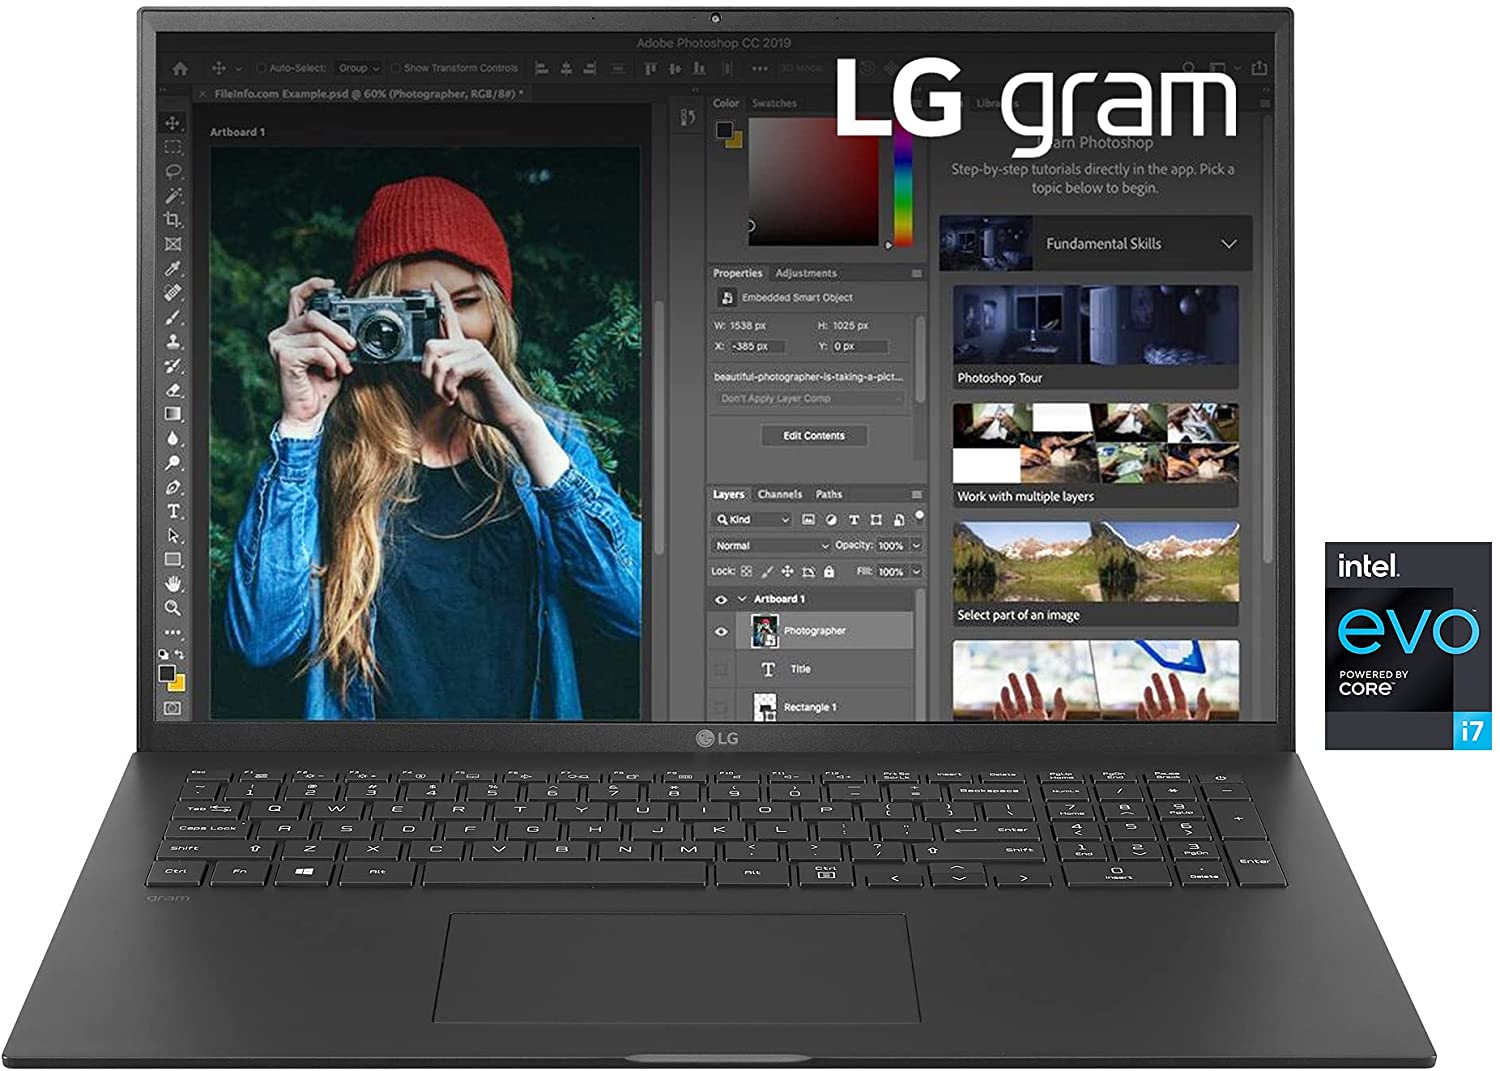 LG Gram - PC Display 17" Quad HD Win10 PRO